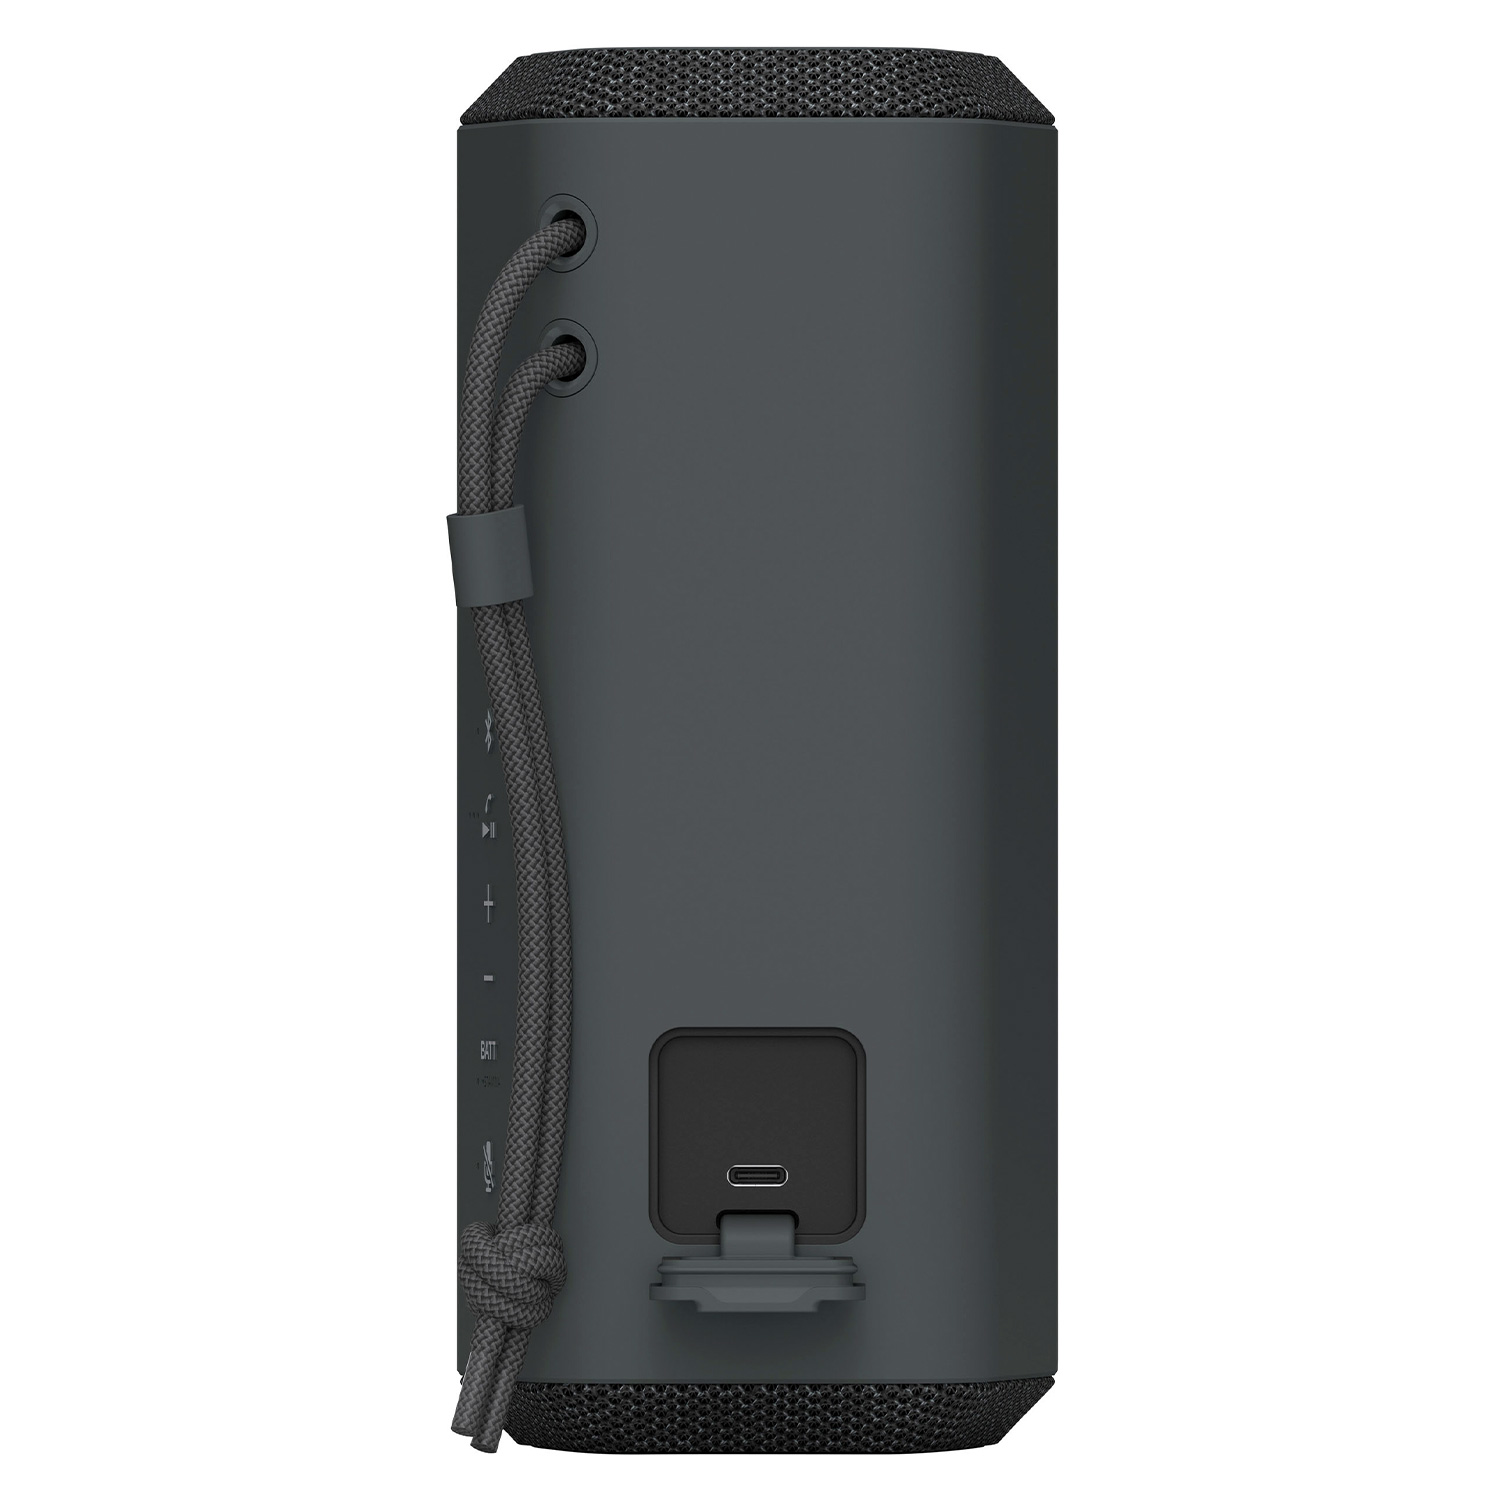 Caixa de Som Sony Portátil SRS-XE200 / Bluetooth - Preto